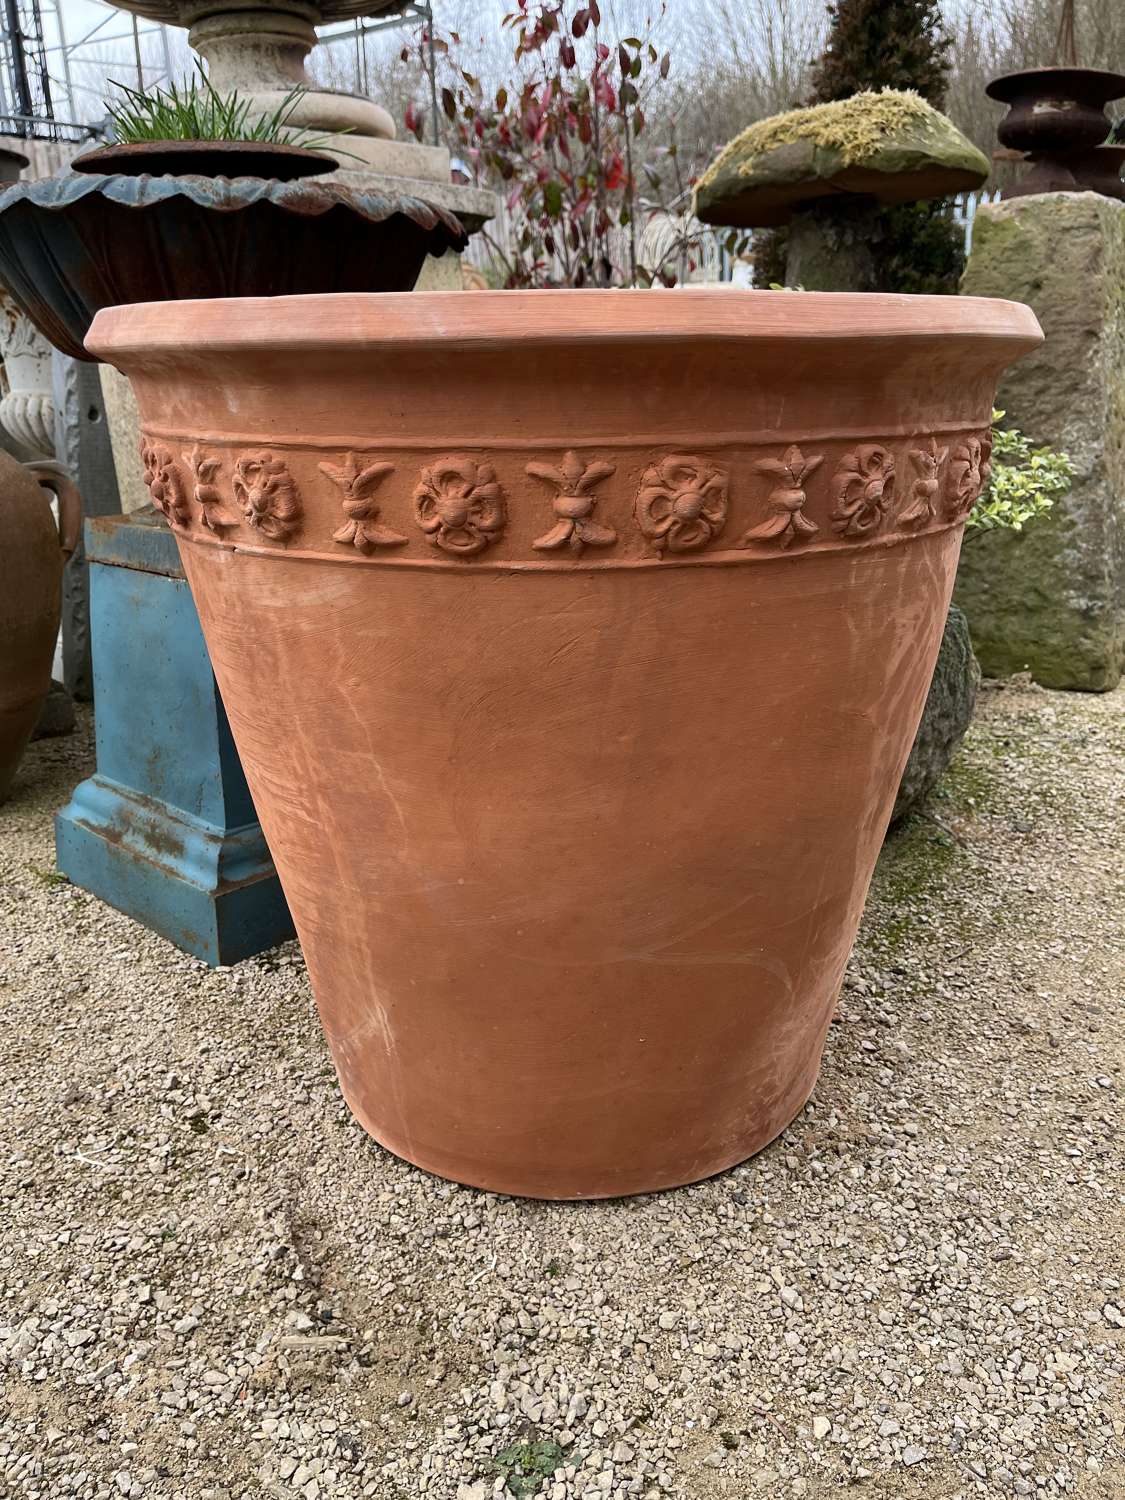 Tall Decorated Terracotta Pot - Italian terracotta pots 62 cm tall